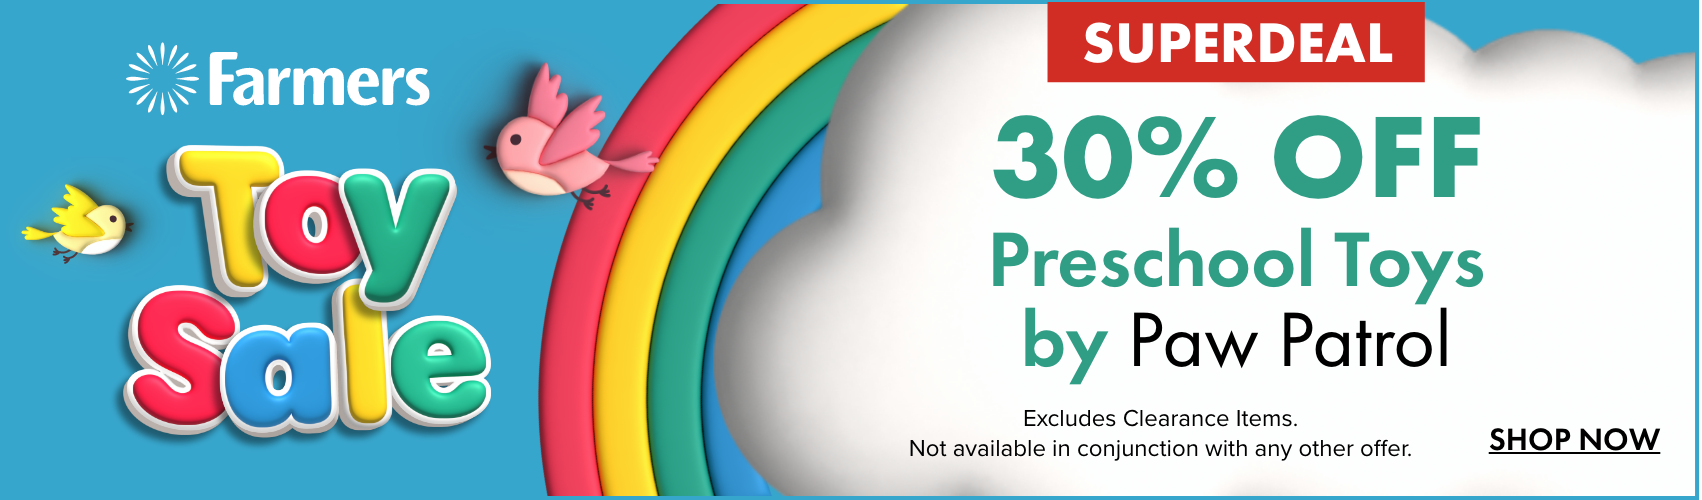 30% OFF Preschool Toys by Paw Patrol